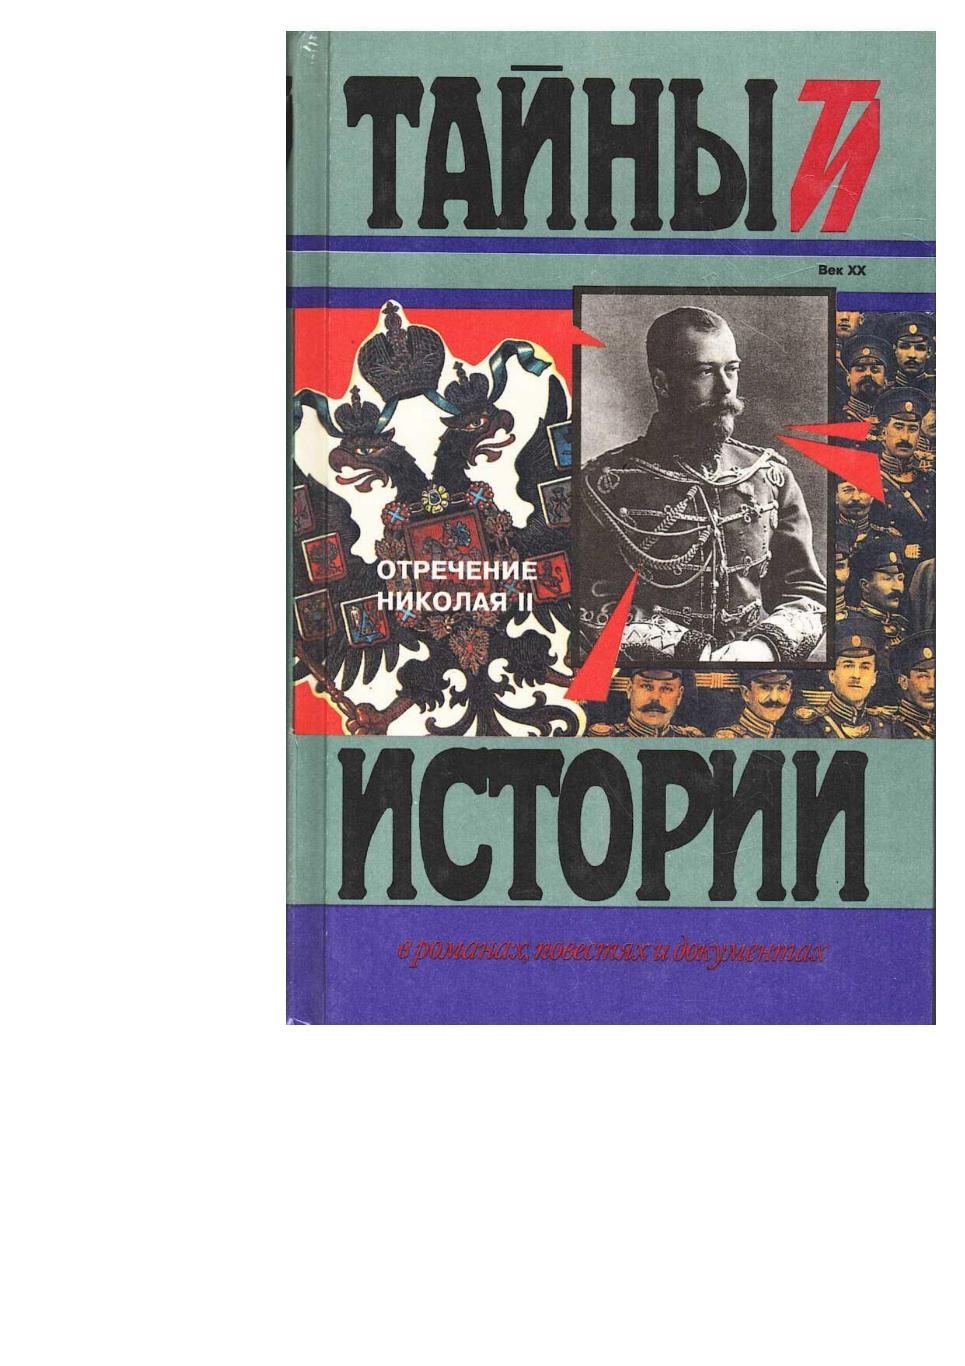 Отречение Николая II. Воспоминания очевидцев, документы. – М., 1998.